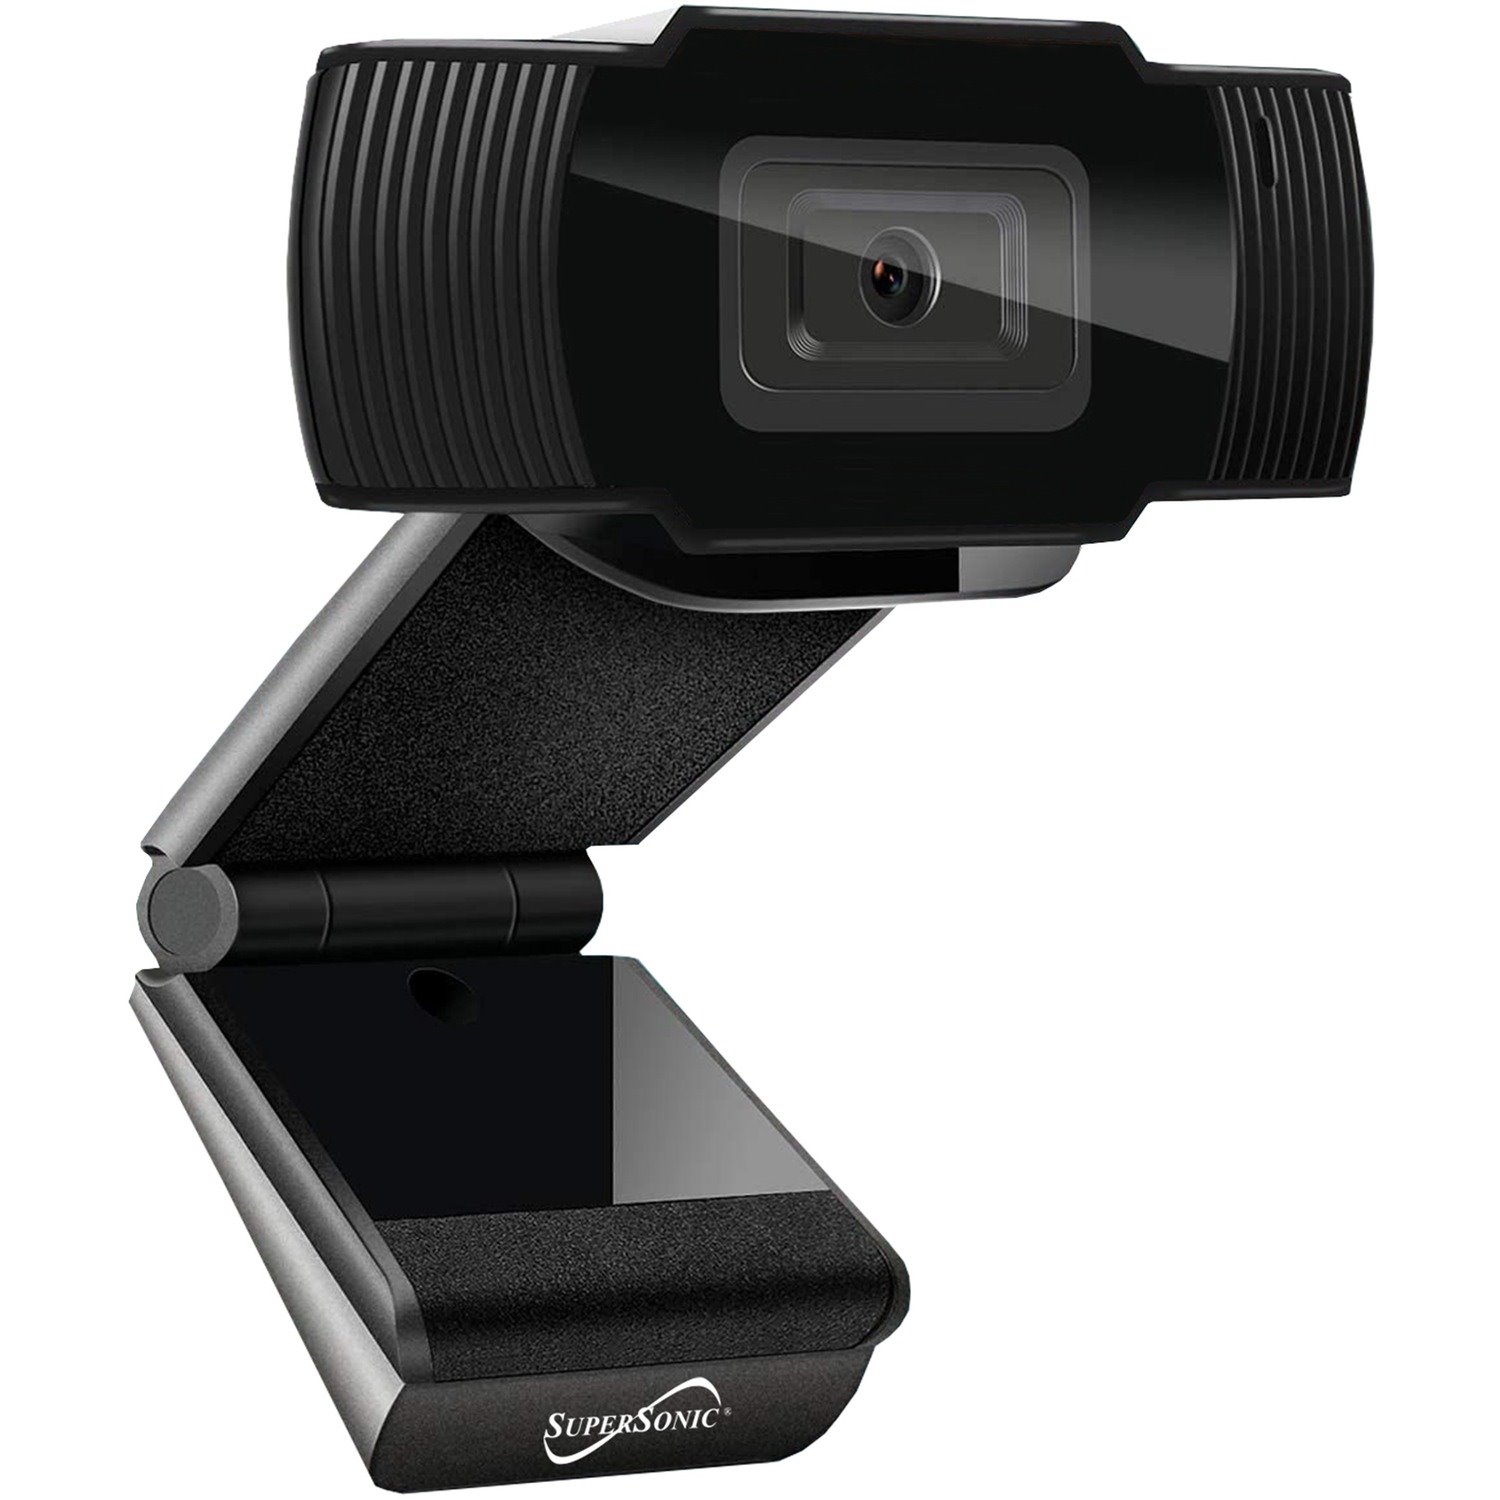 Supersonic SC-940WC Webcam - 2 Megapixel - 30 fps - Black - USB 3.0 - Retail